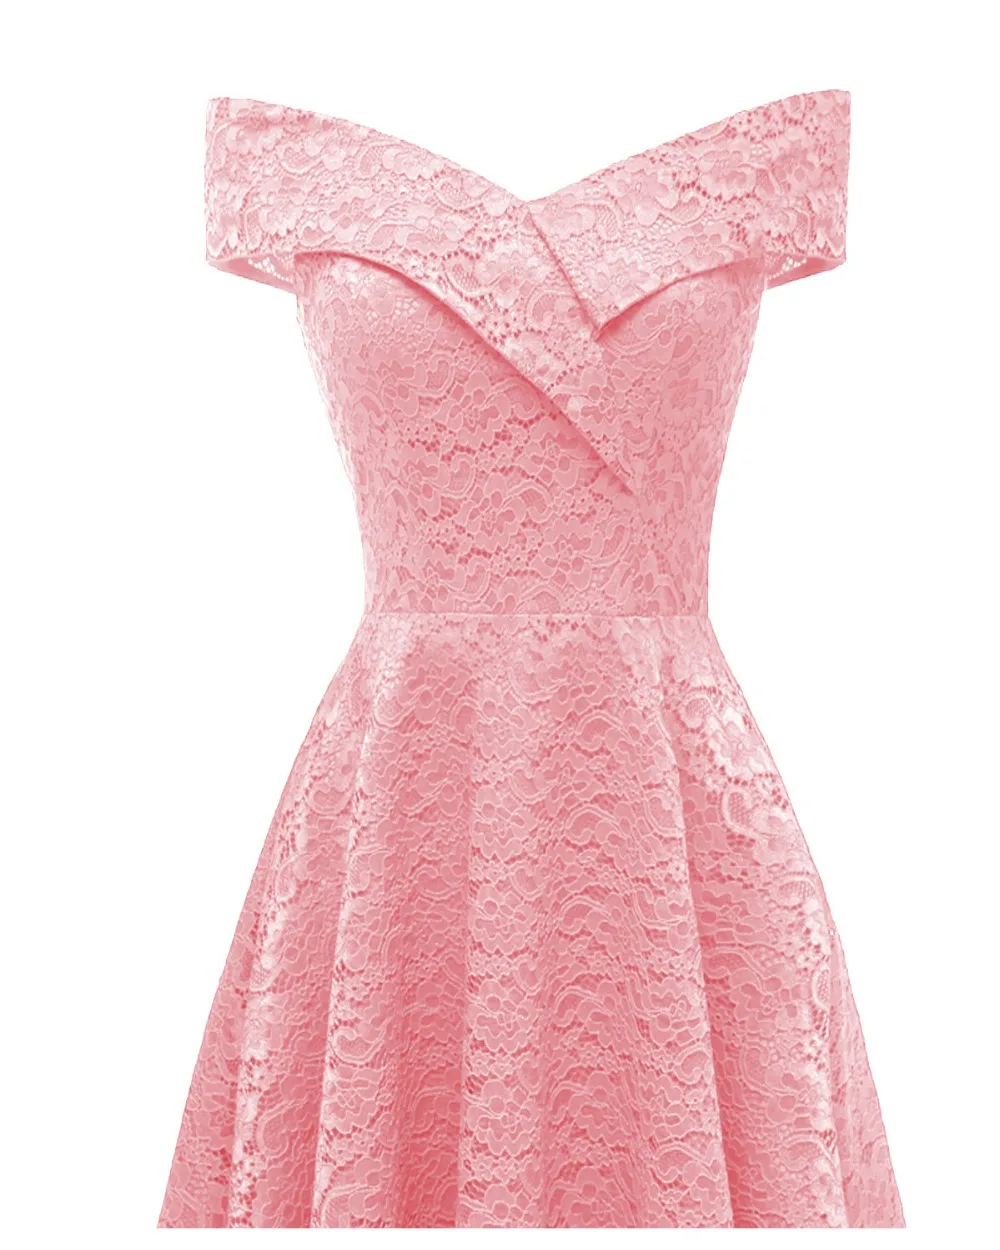 HYFZ9972F# вырез лодочкой розовое короткое Кружевное платье подружки невесты свадебное праздничное платье выпускного вечера дешево оптом свадебное для невесты торжественное платье для девочки